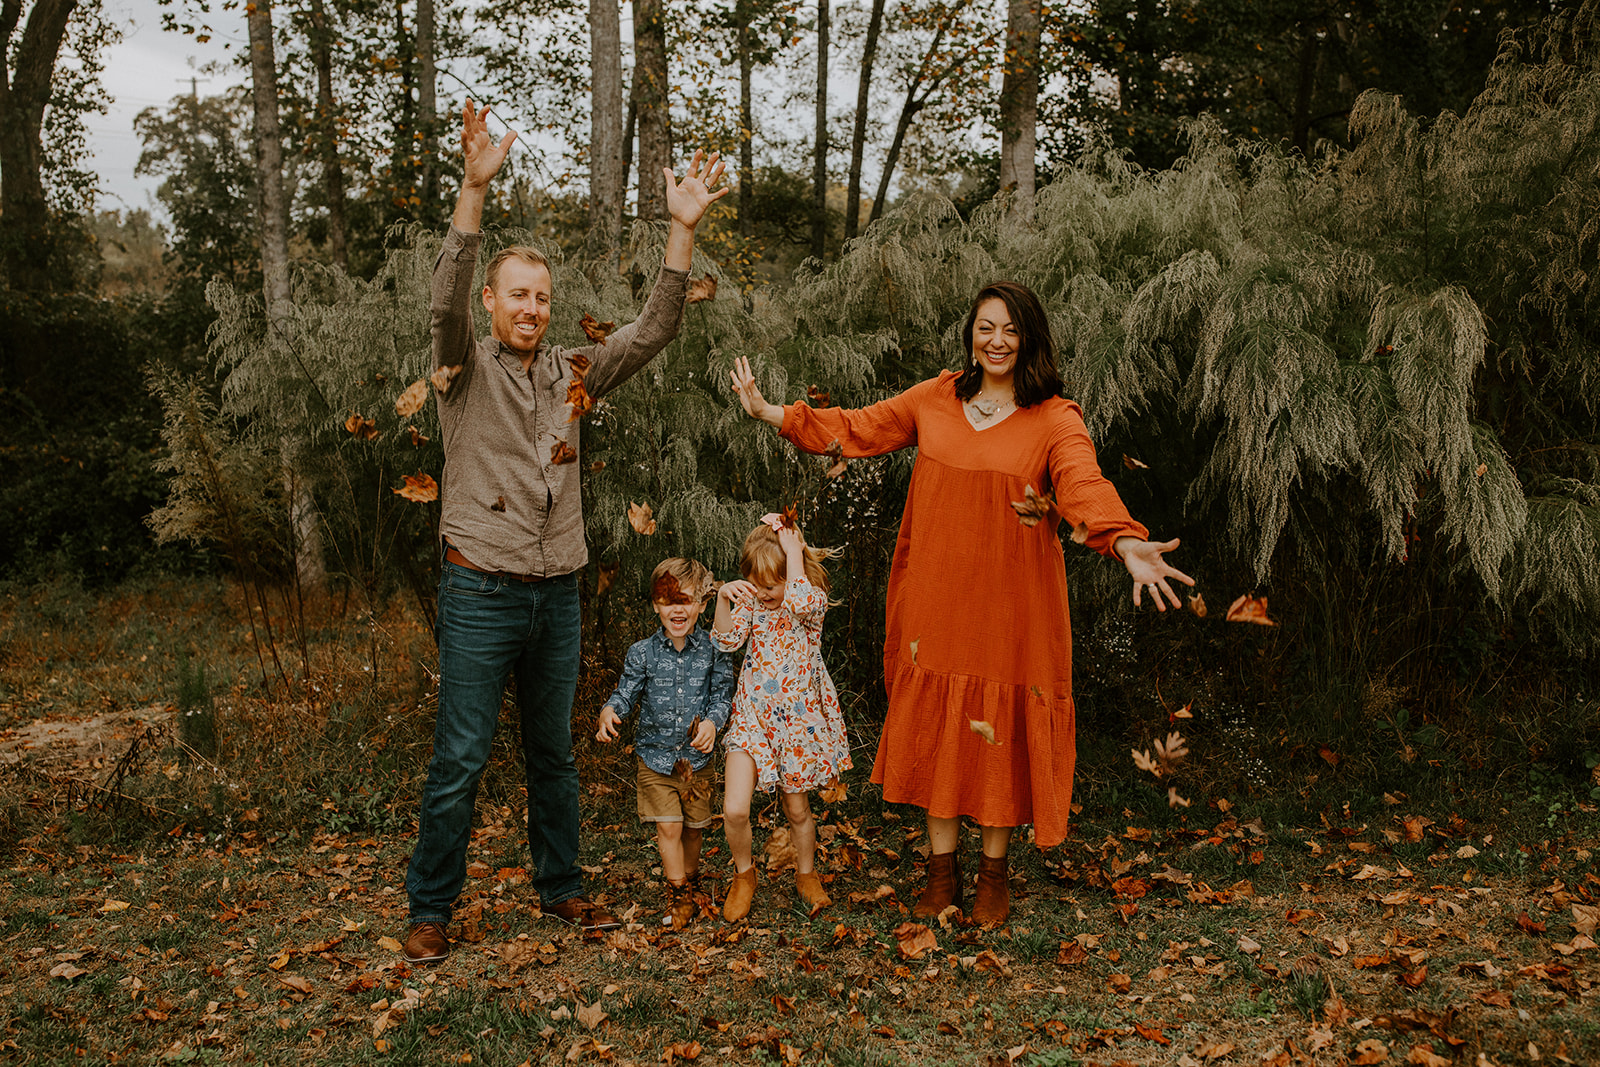 fall-family-photos-greenville-sc